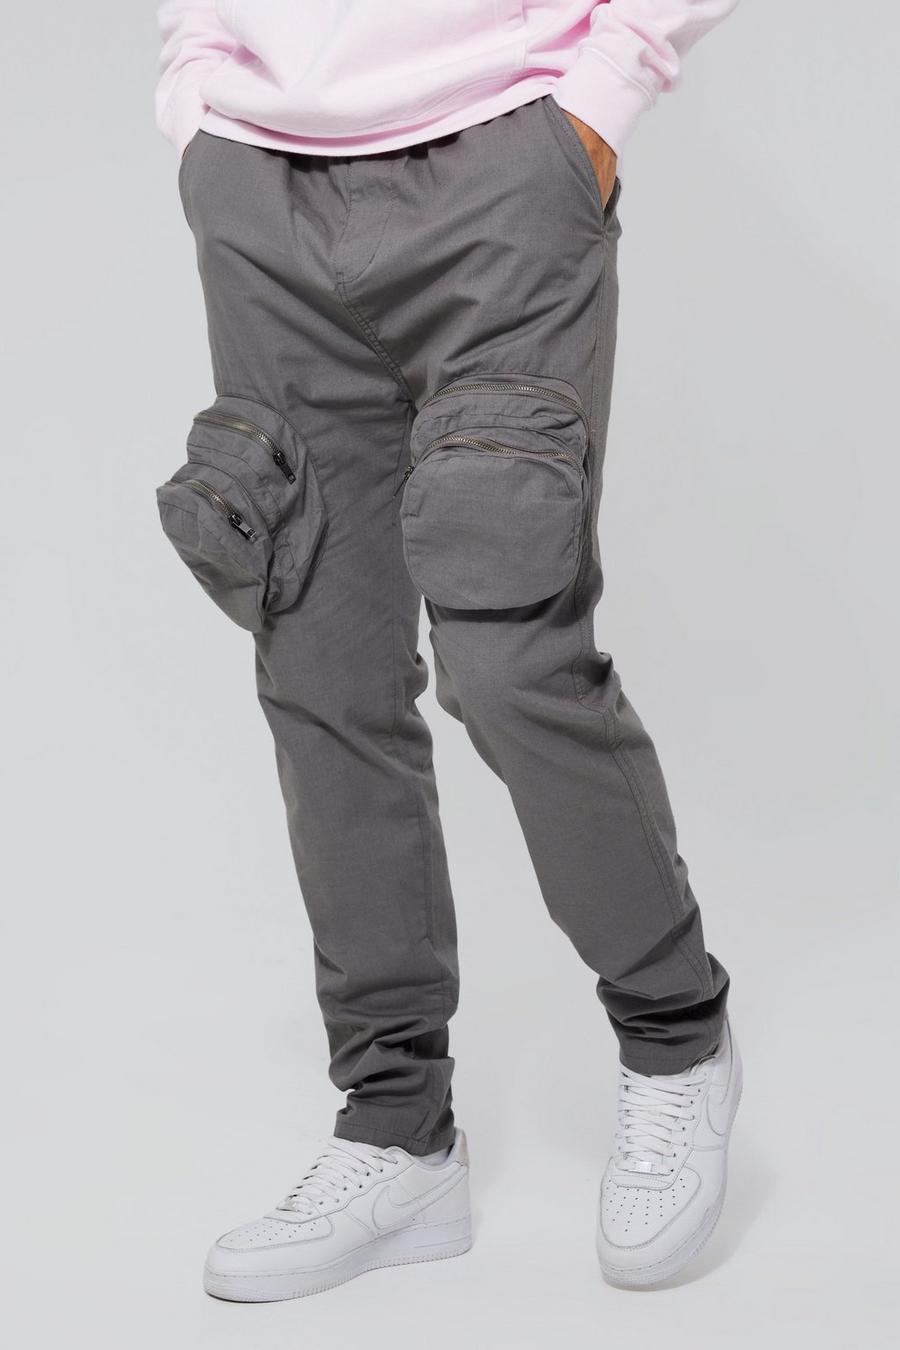 Pantalón Tall cargo ajustado elegante con cremallera 3D, Grey